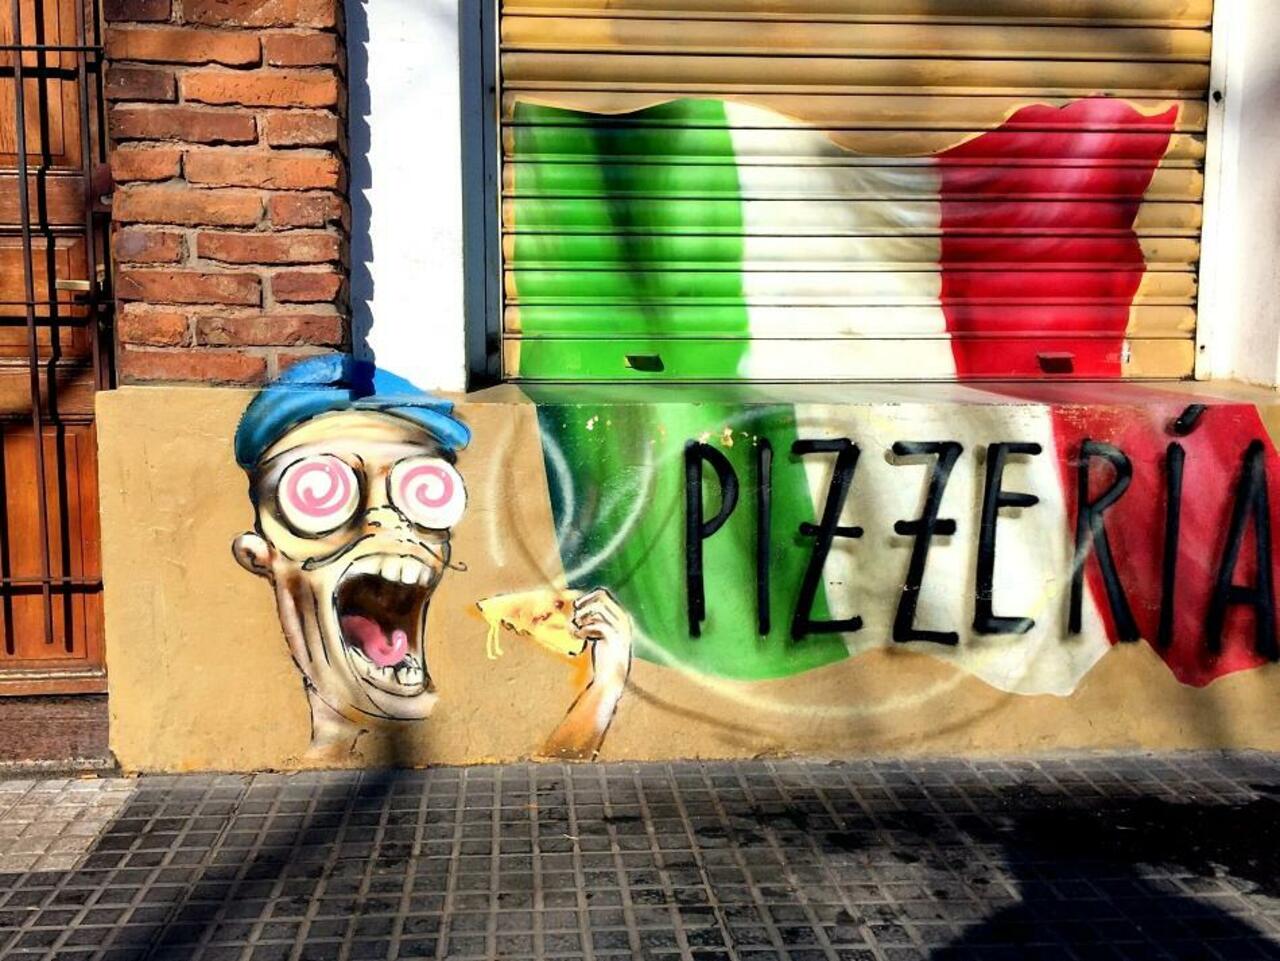 #Graffiti de hoy: << Muzzarella special pizza... >> calles 9y66 #LaPlata #Argentina #StreetArt #UrbanArt #ArteUrbano http://t.co/SRq52y9Fgx